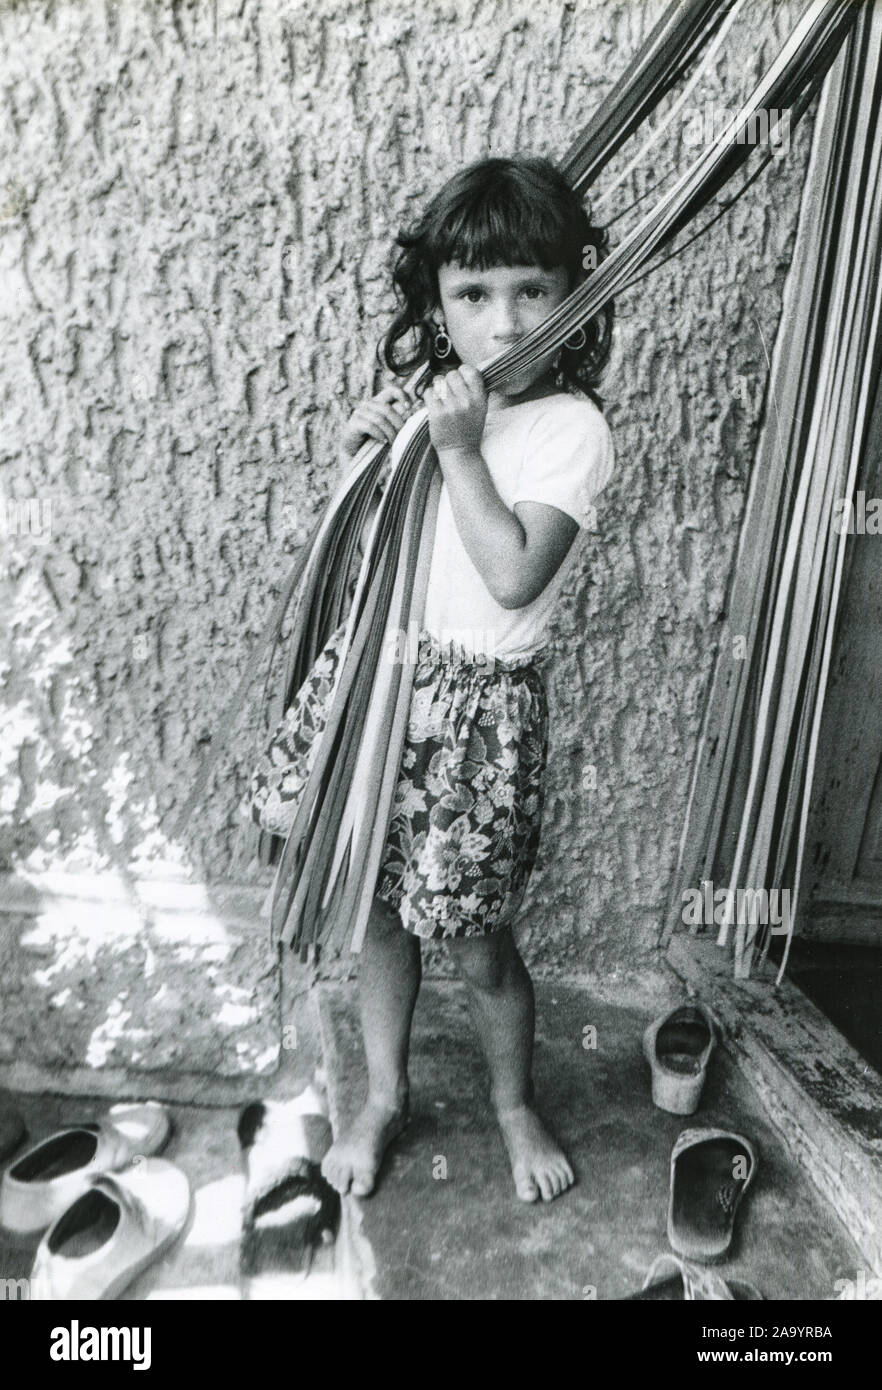 L'année 1988. Un peu fille bulgare du village de Voditsa sur le seuil de sa maison. La Bulgarie. Banque D'Images